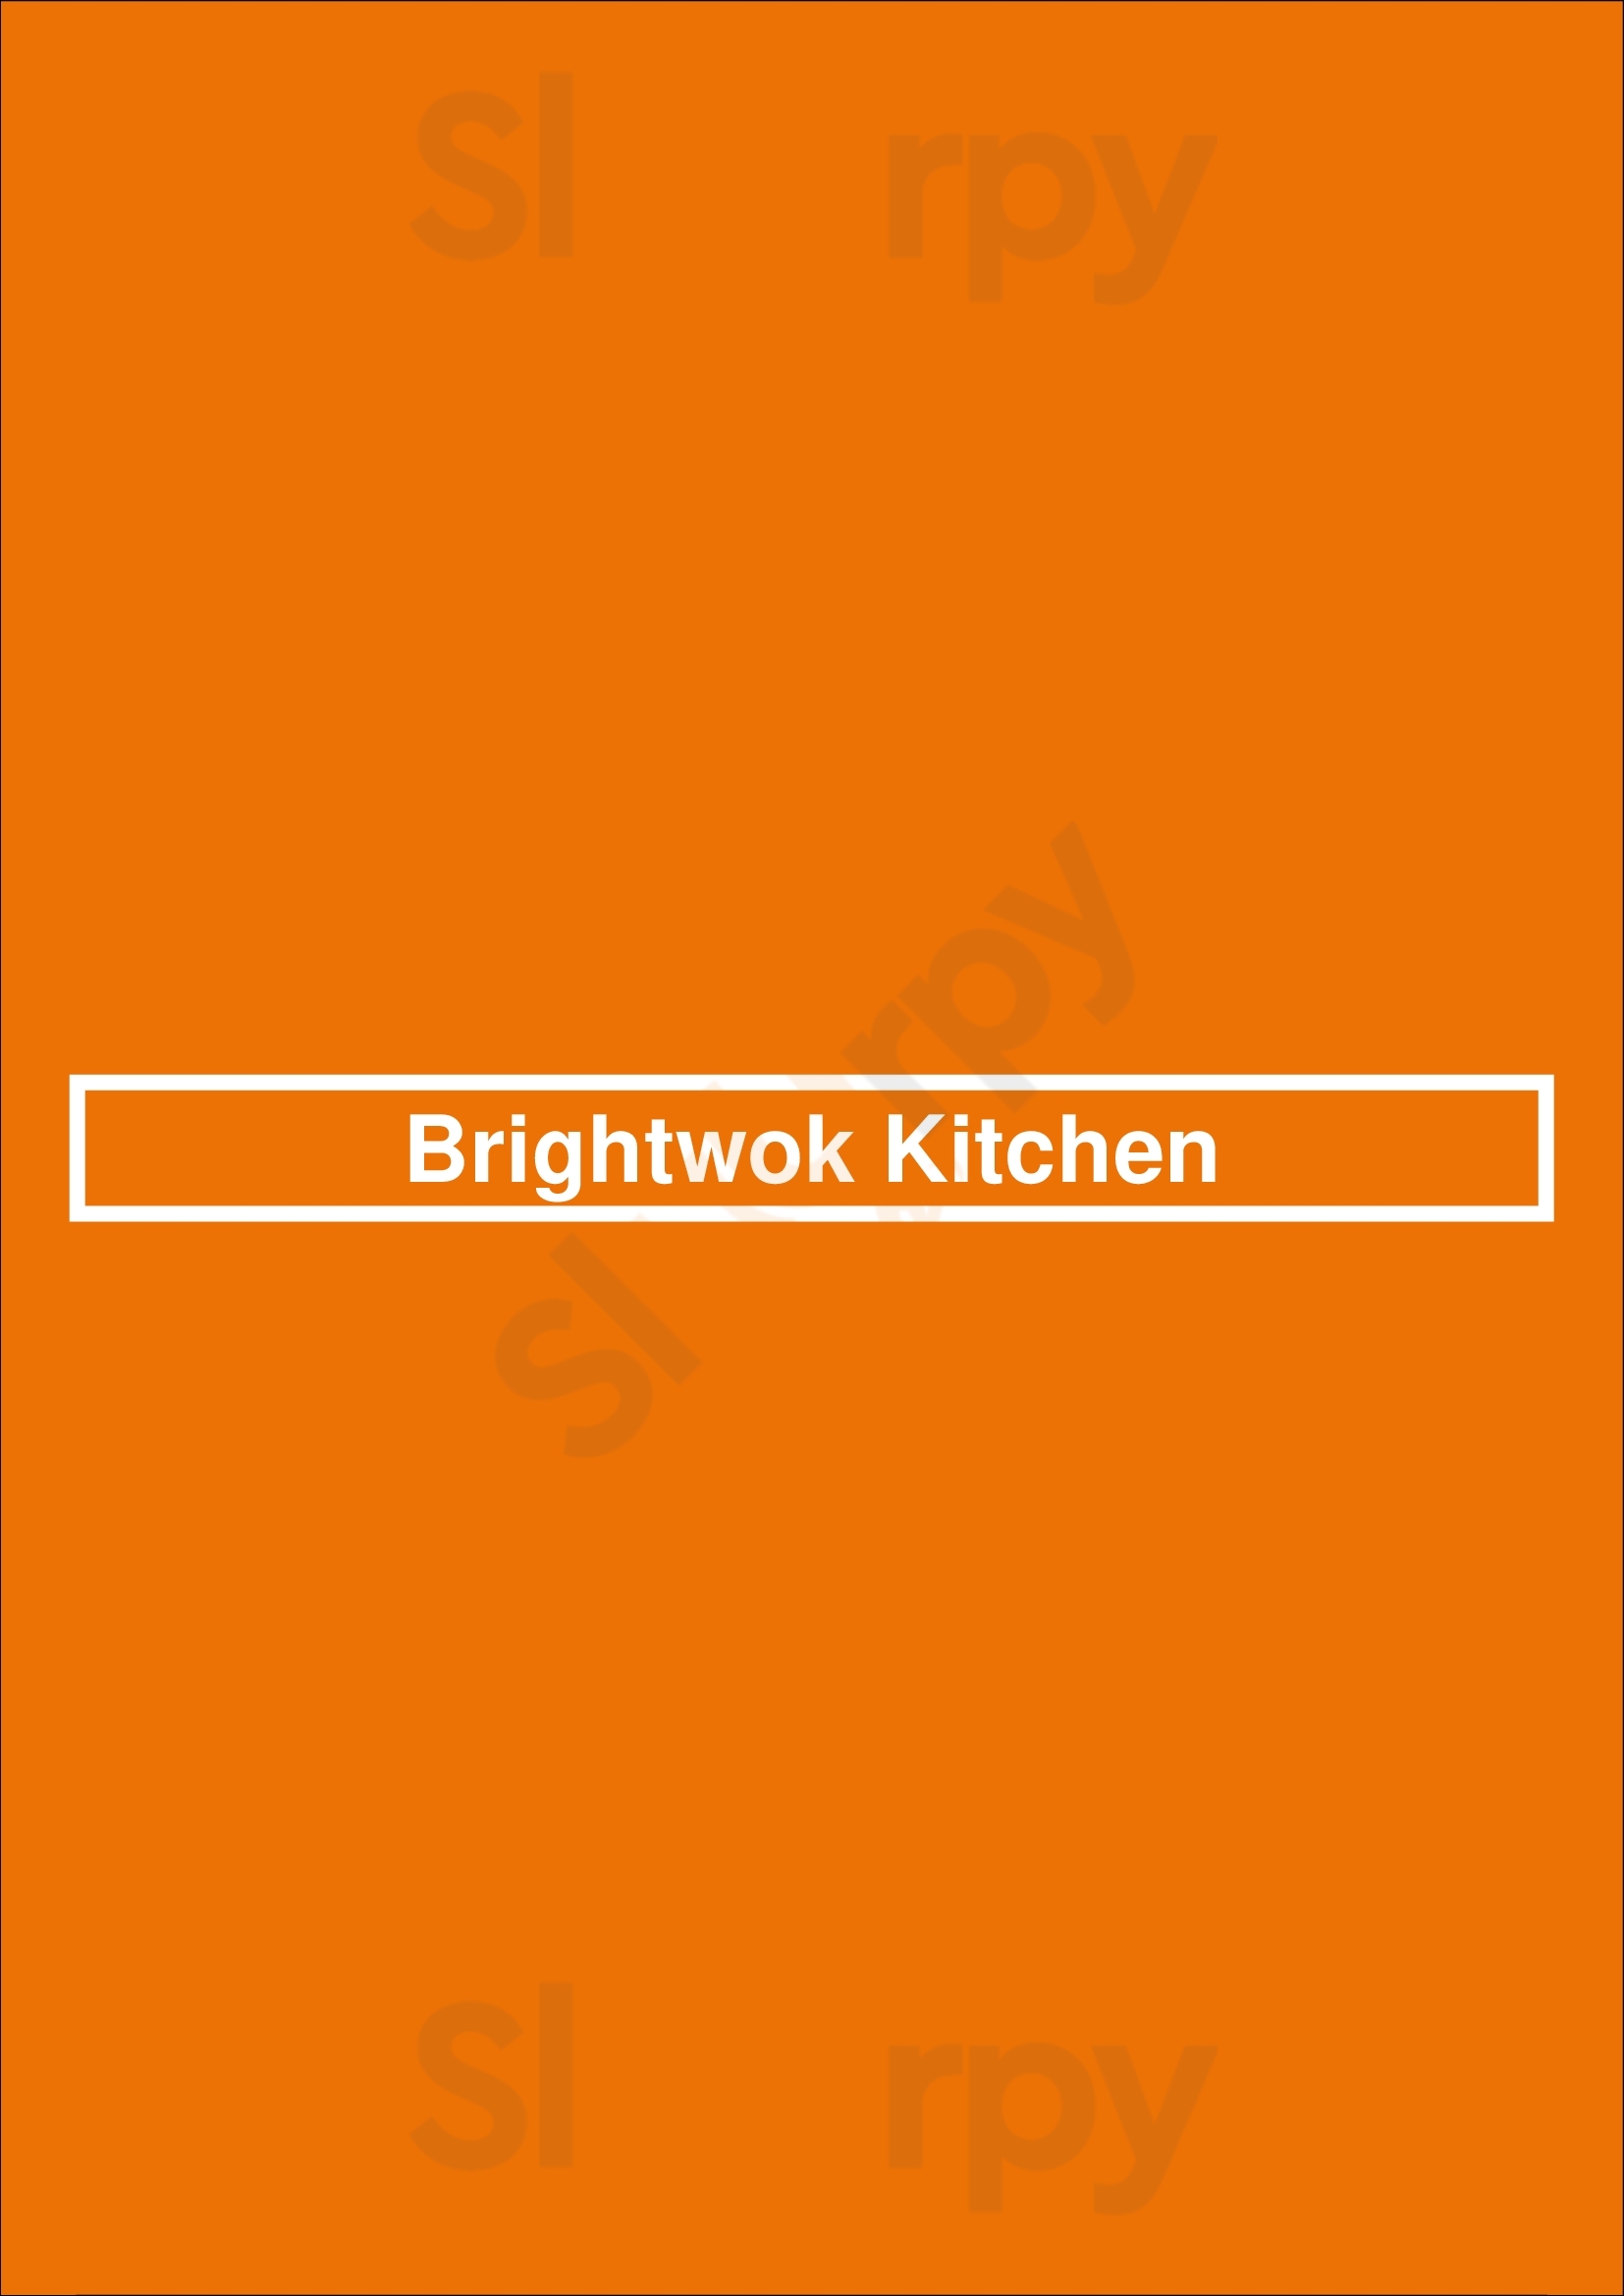 Brightwok Kitchen Chicago Menu - 1